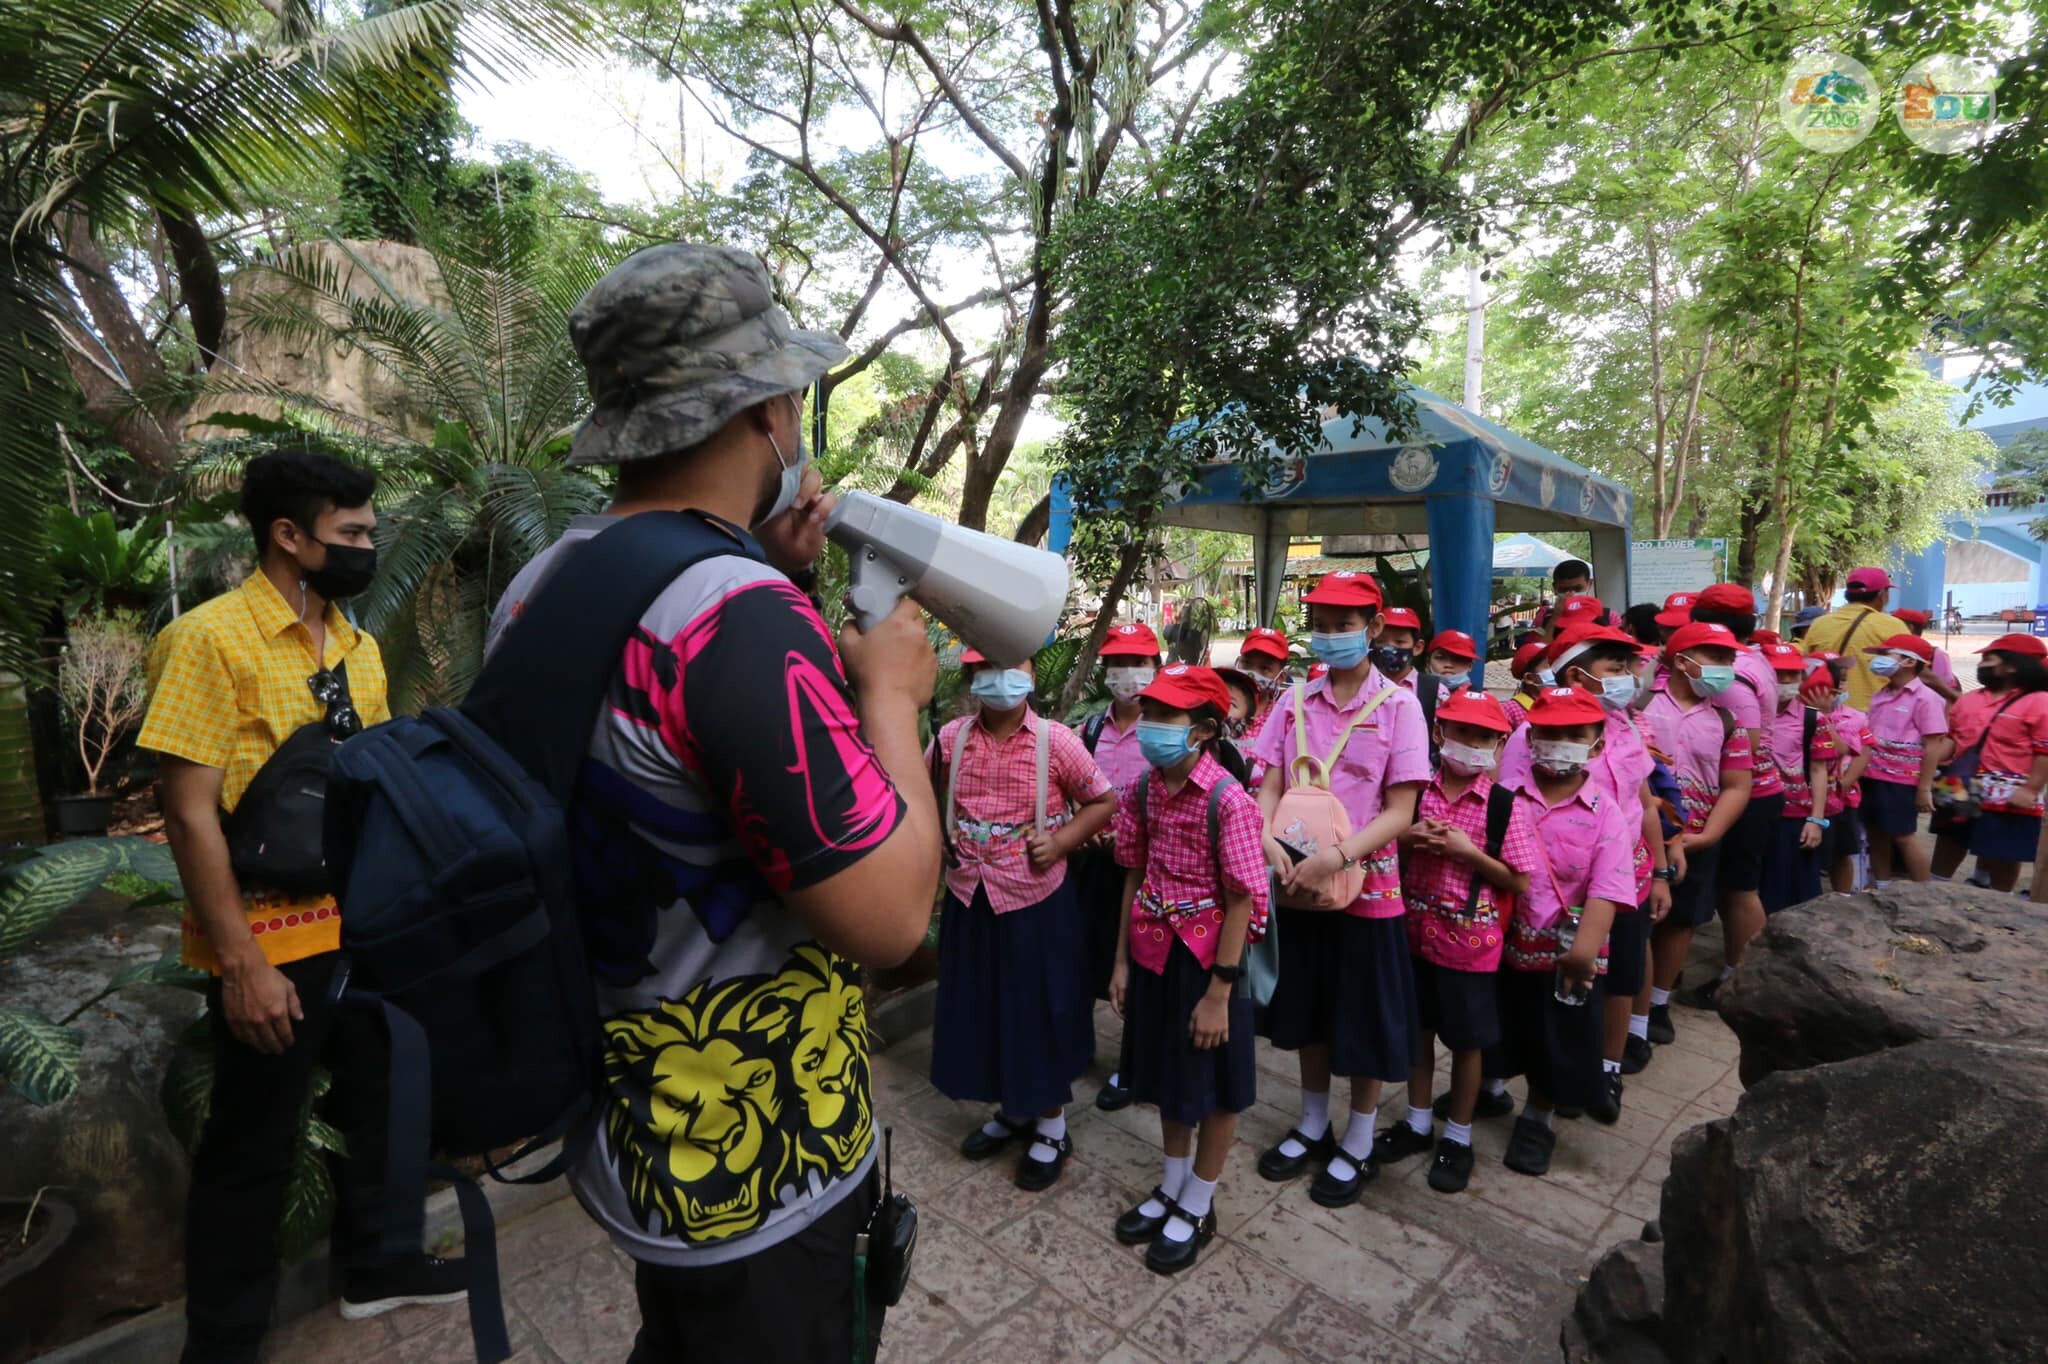 สวนสัตว์นครราชสีมาเปิดรับสมัครโรงเรียนเข้าร่วมแผนงานนำนักเรียน เข้าศึกษาเรียนรู้ในสวนสัตว์ฟรี ประจำปีงบประมาณ 2564